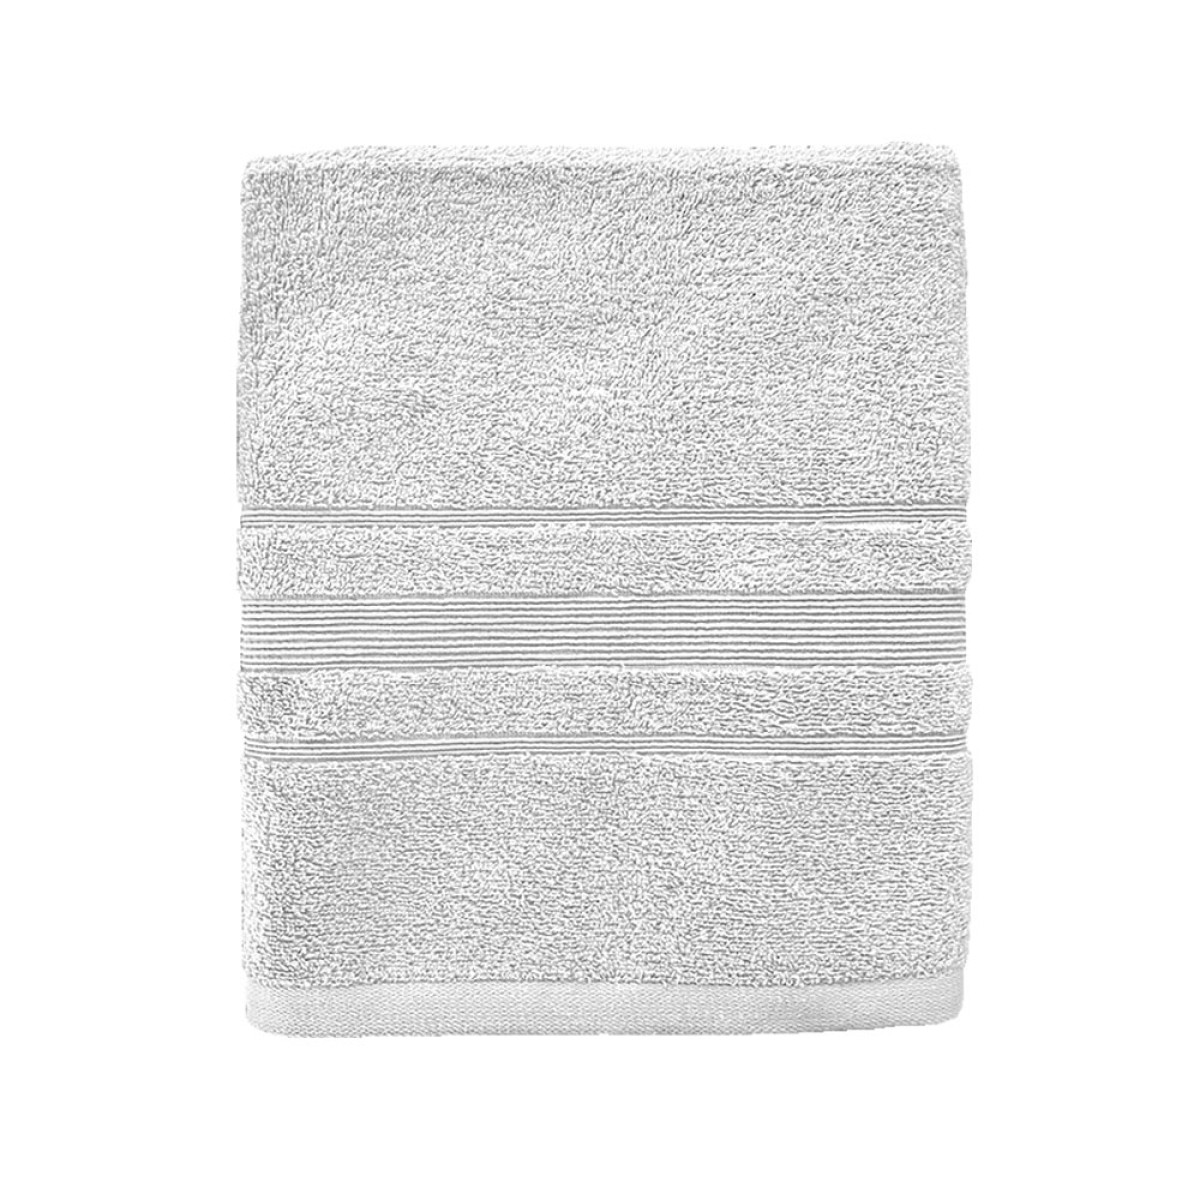 Πετσέτα Σώματος 550grs (70x140) 100% Βαμβάκι με μπορντούρα με ανάγλυφο σχέδιο λευκό χρώμα Sidirela Line E-3203-6